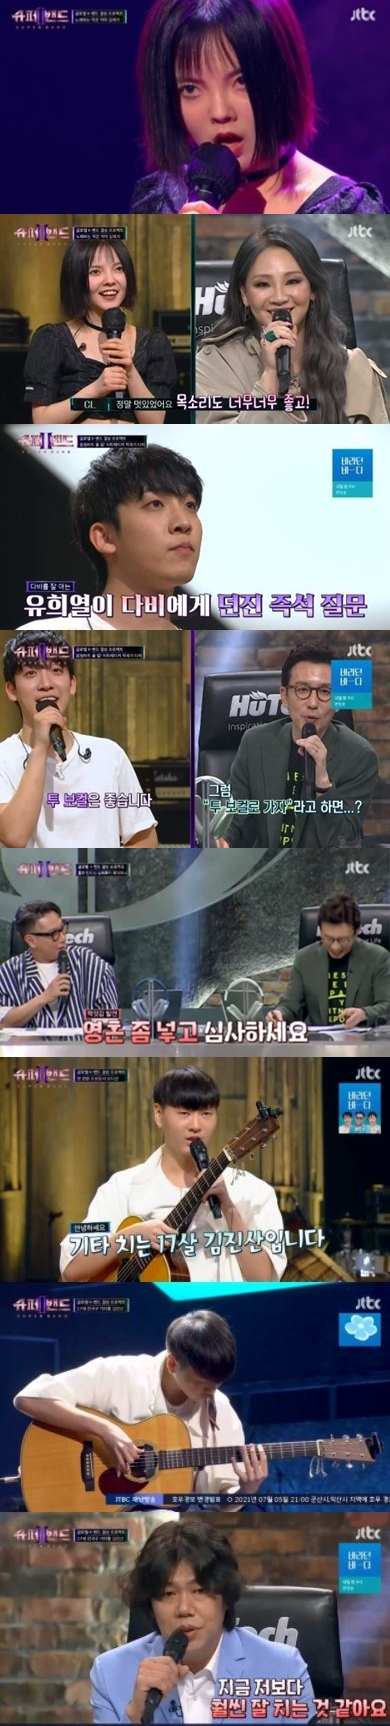 5일 방송된 JTBC 예능 '슈퍼밴드2' 캡처 화면